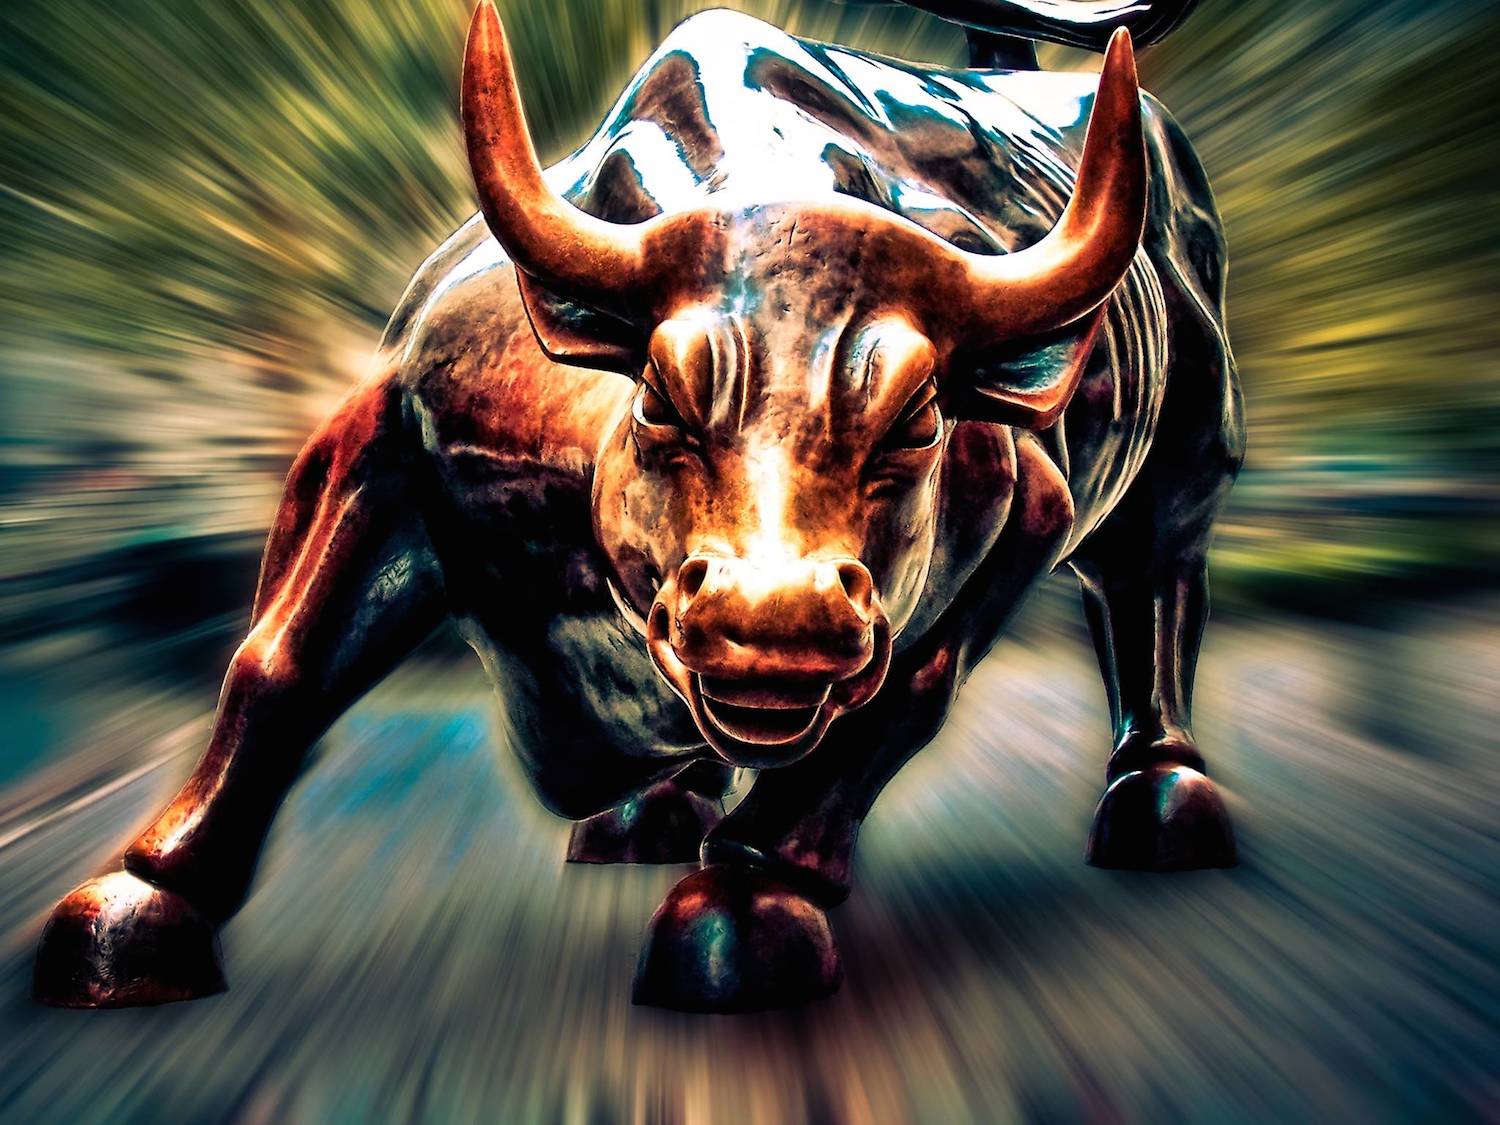 Bull Wall Street - HD Wallpaper 